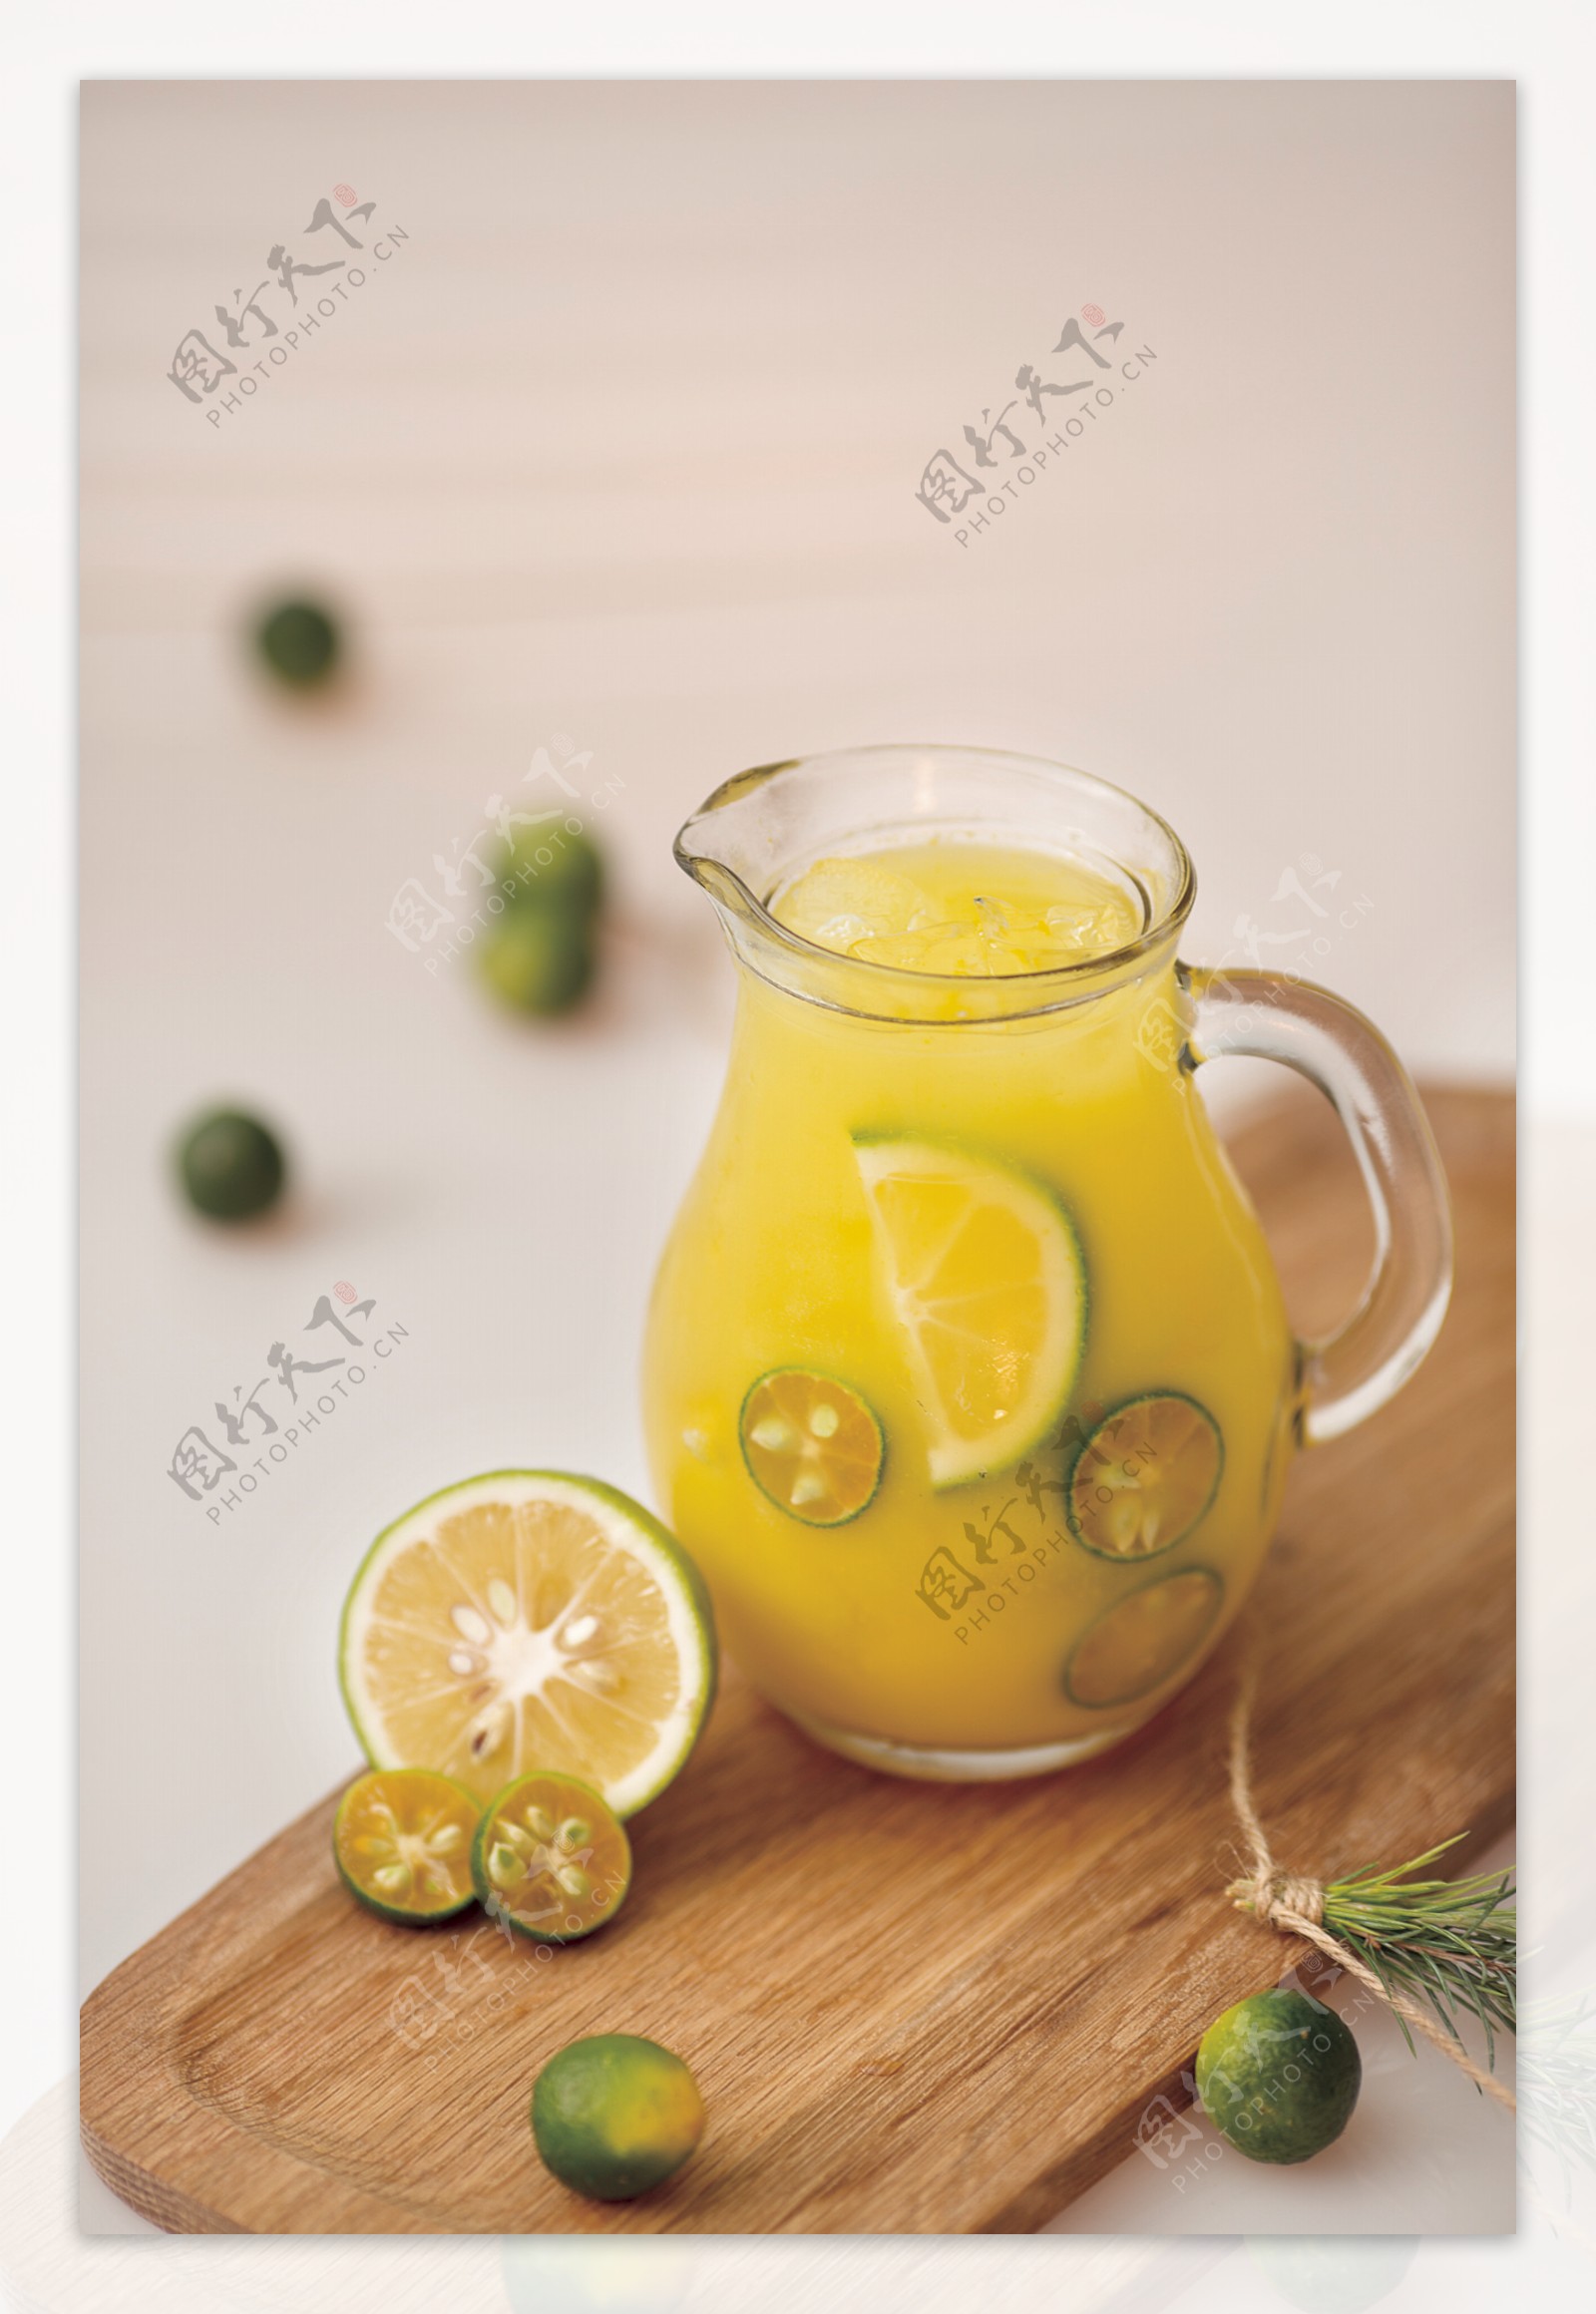 金桔柠檬汁